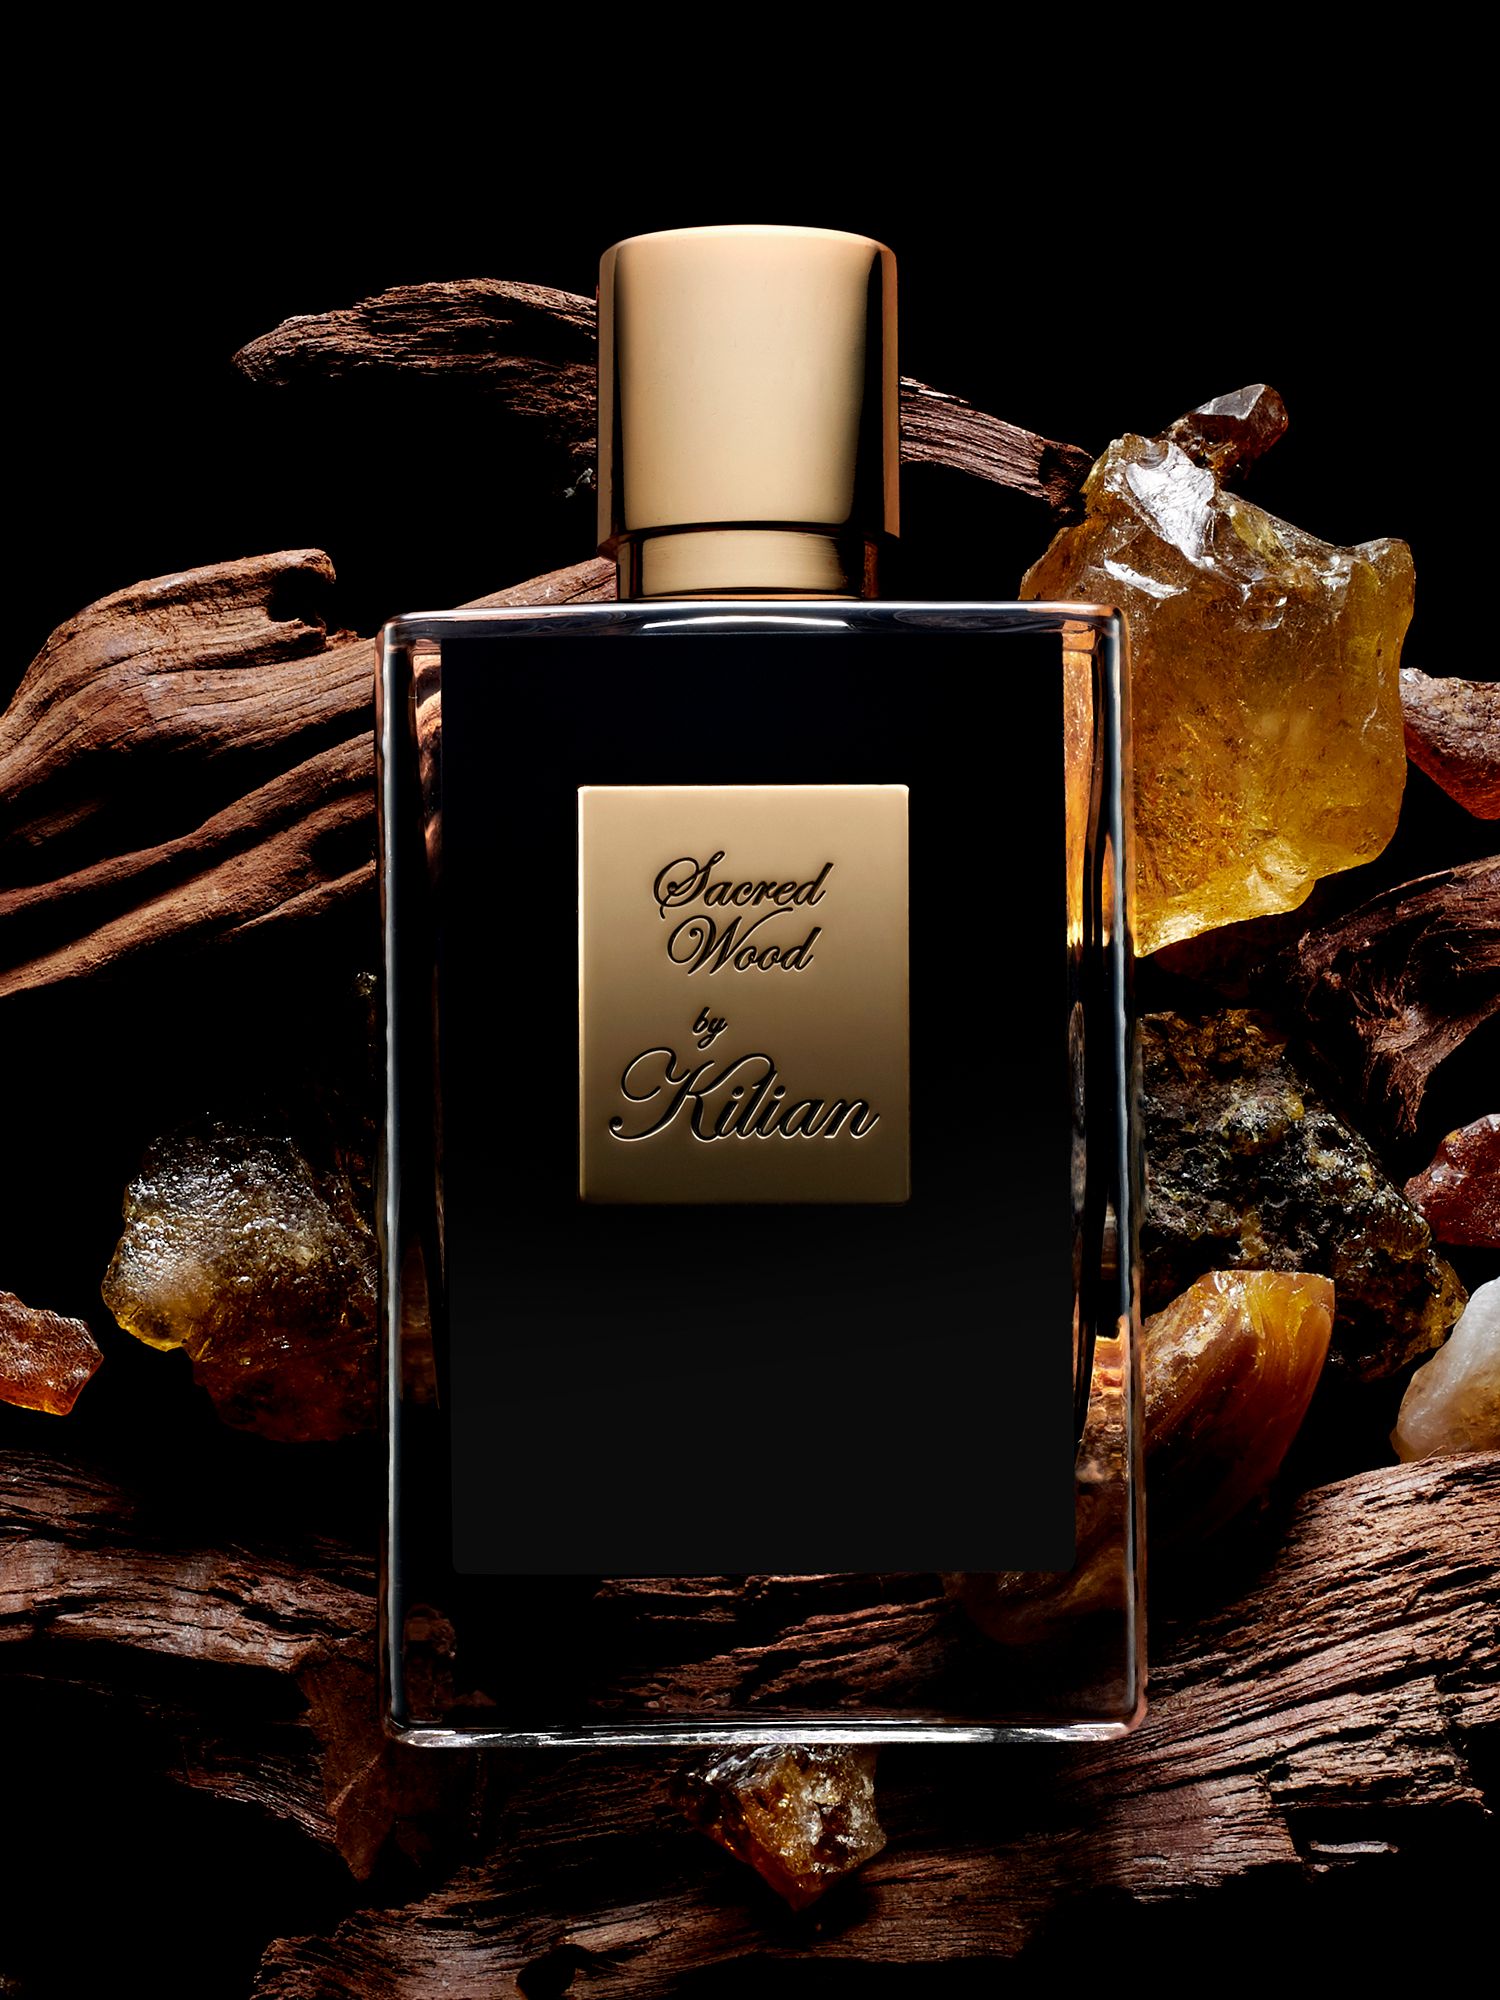 KILIAN PARIS Sacred Wood Eau de Parfum, 50ml at John Lewis & Partners